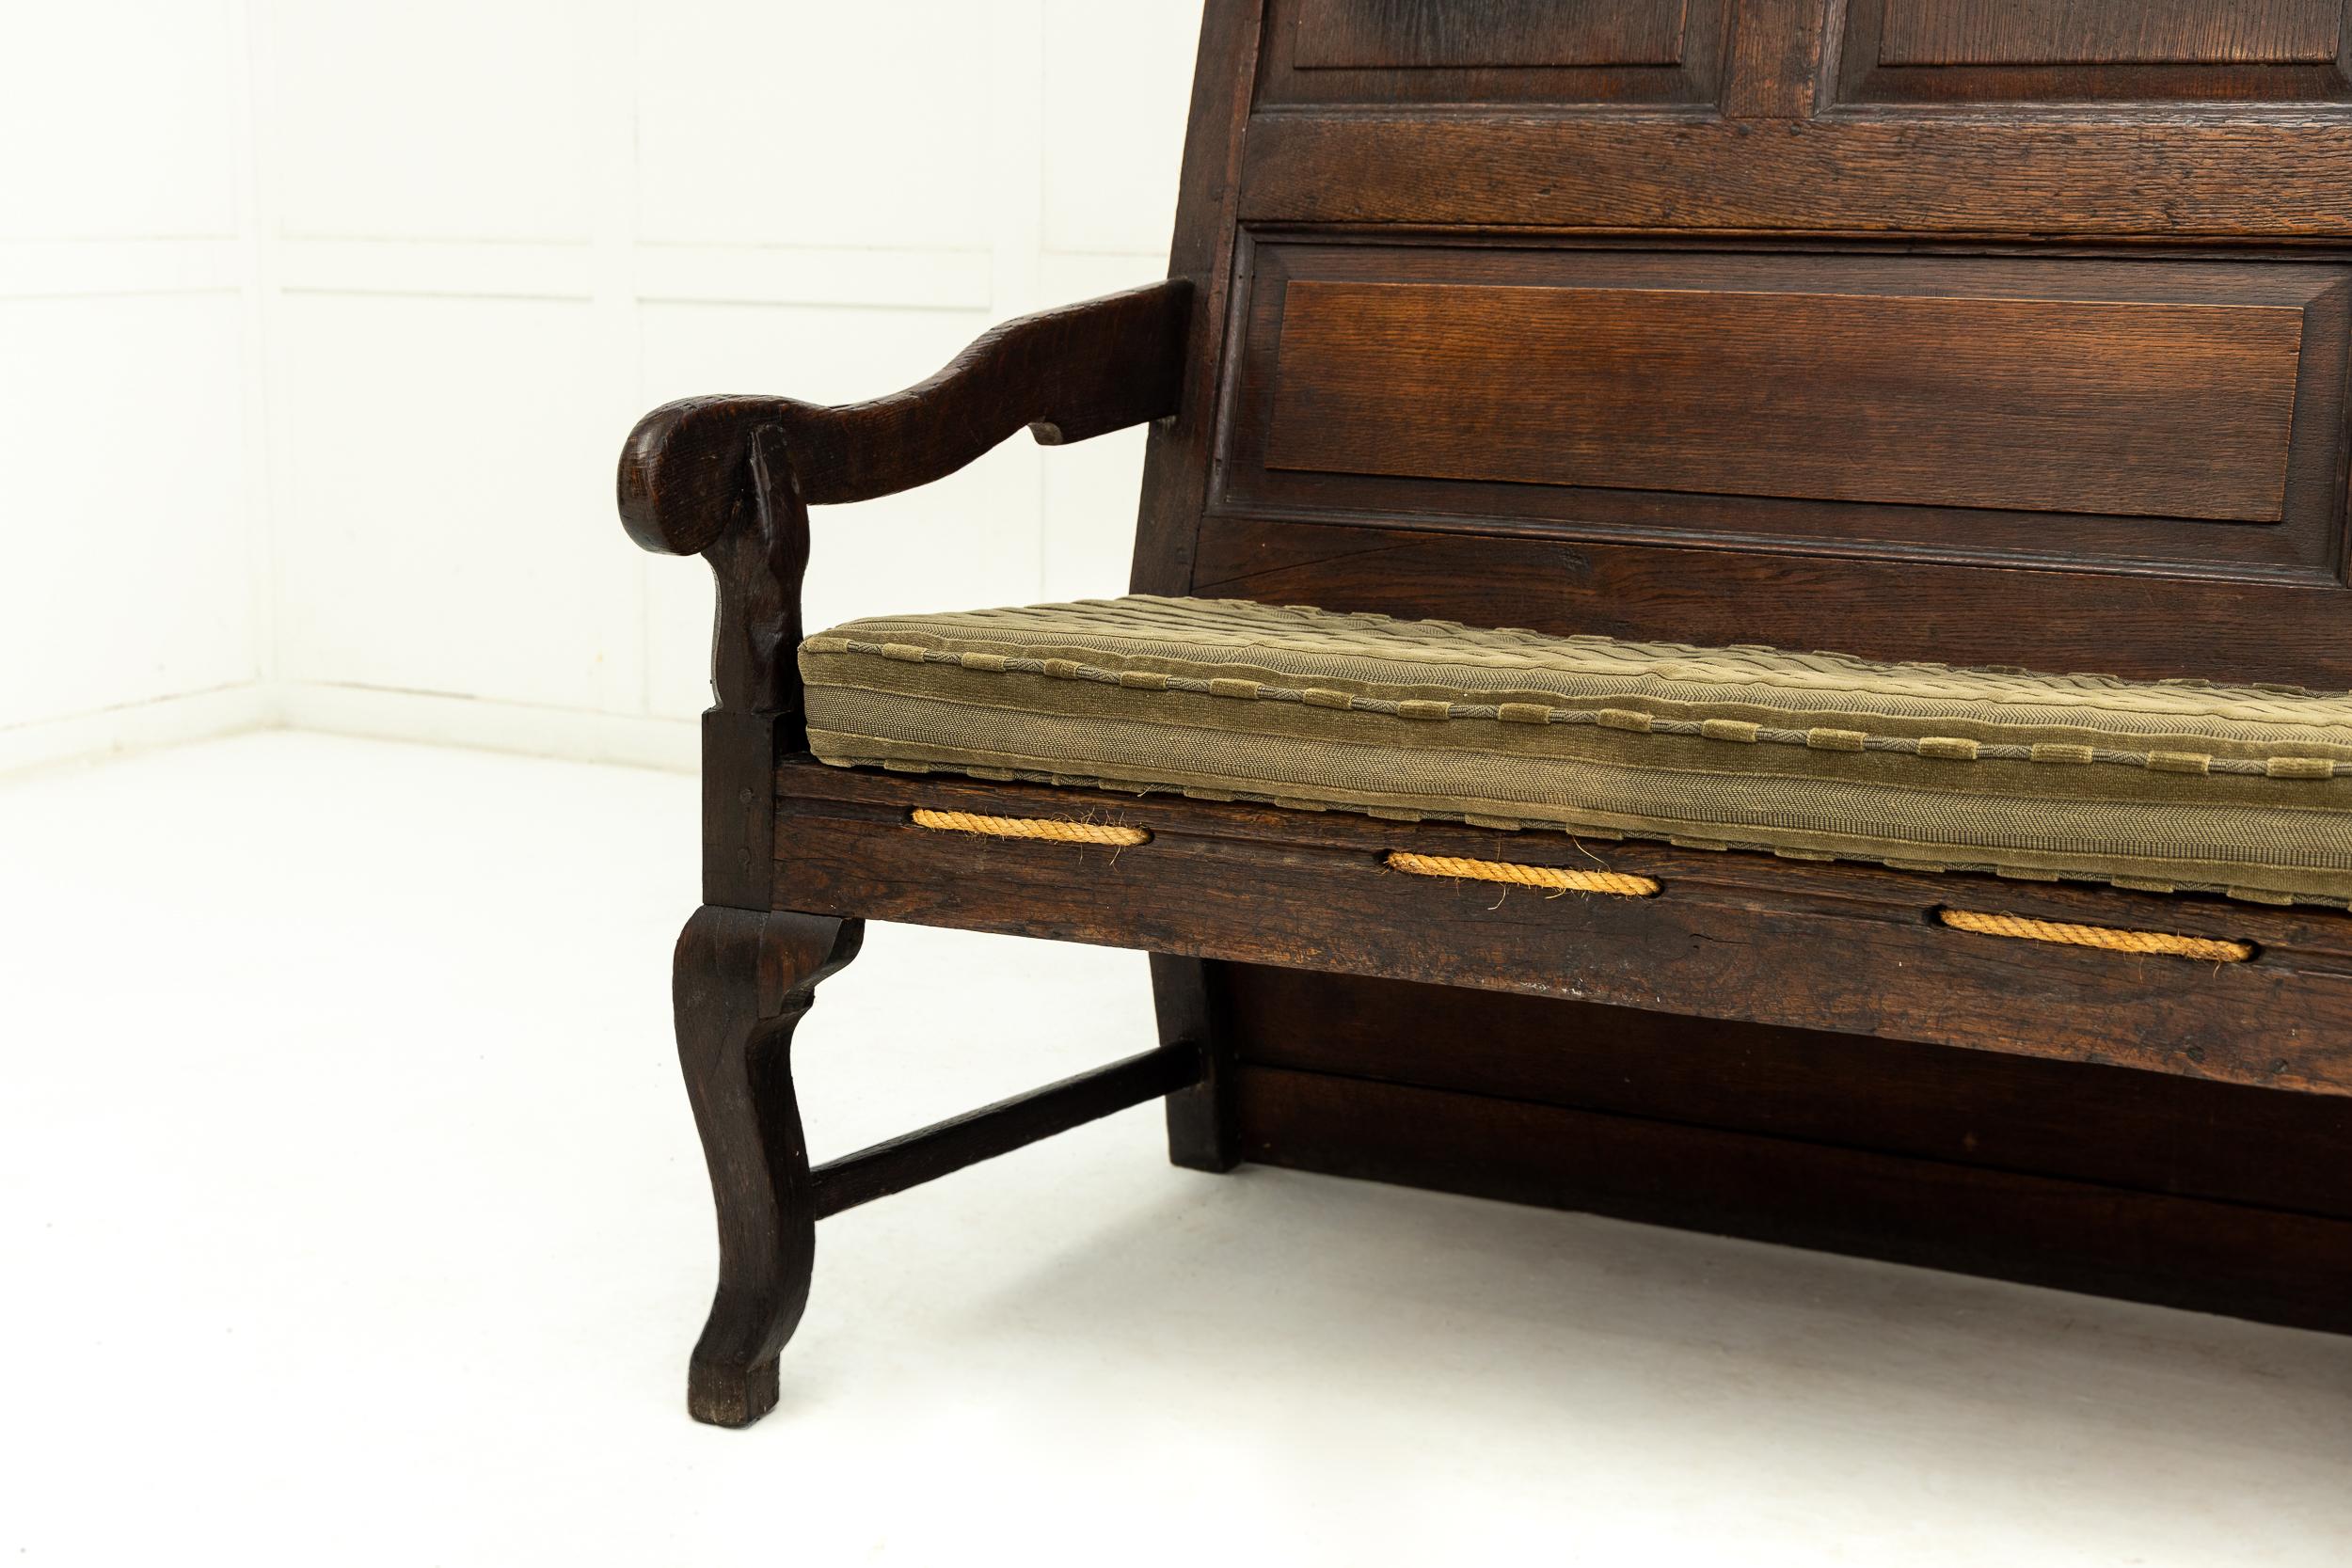 Ein englischer Eichenholzsessel aus dem 18. Jahrhundert mit großen, überdimensionalen Proportionen.

Mit einer fein getäfelten Rückenlehne von großer Höhe und lang genug, um bequem vier Personen zu sitzen, wird diese schöne Sitzgelegenheit von zwei